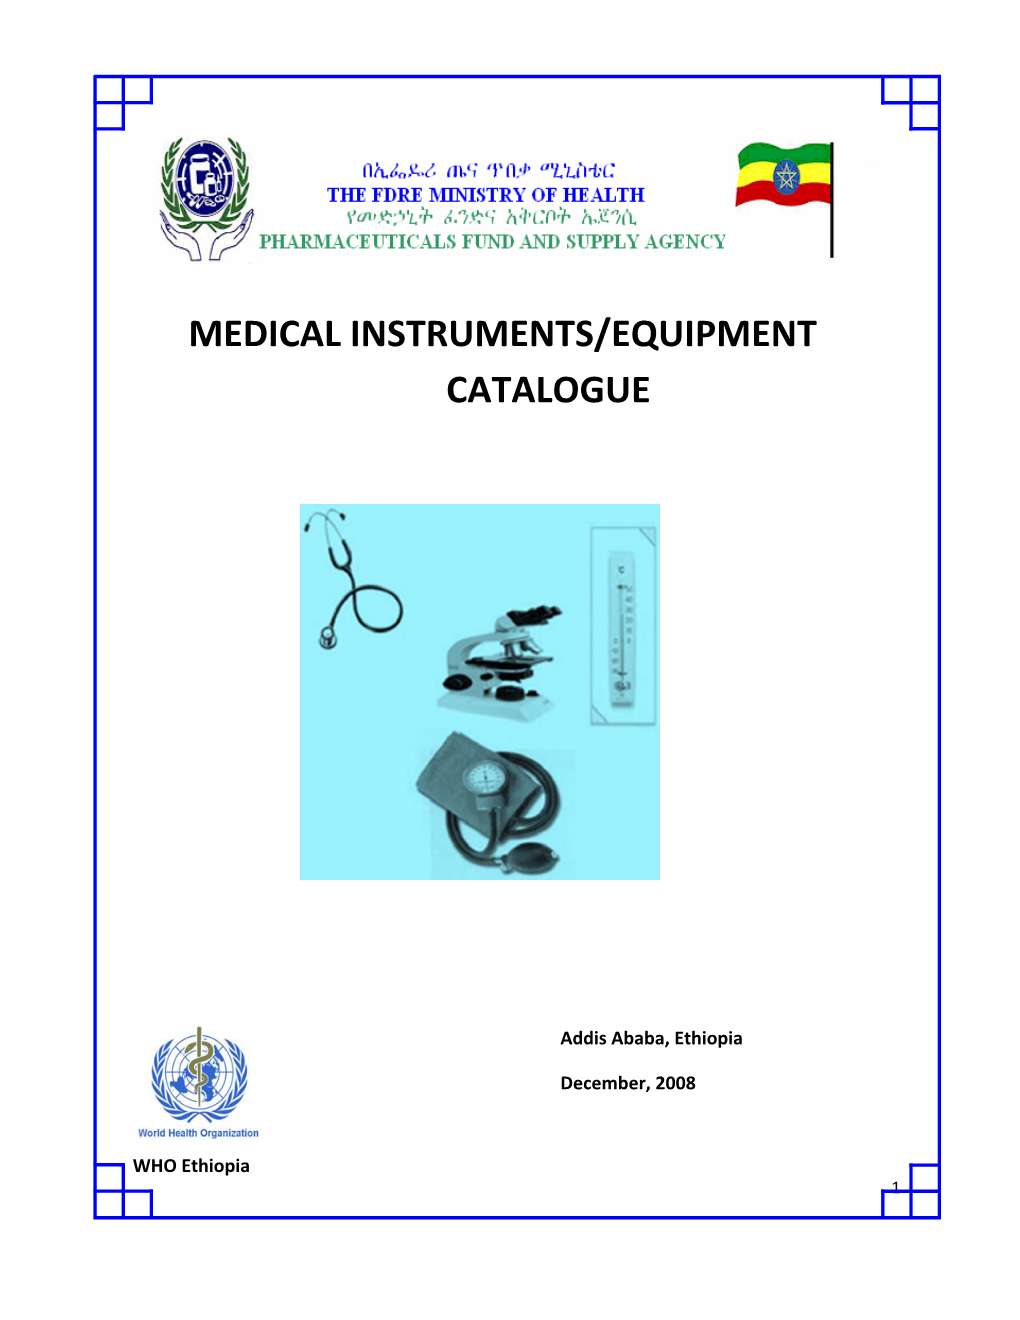 Medical Instruments/Equipment Catalogue